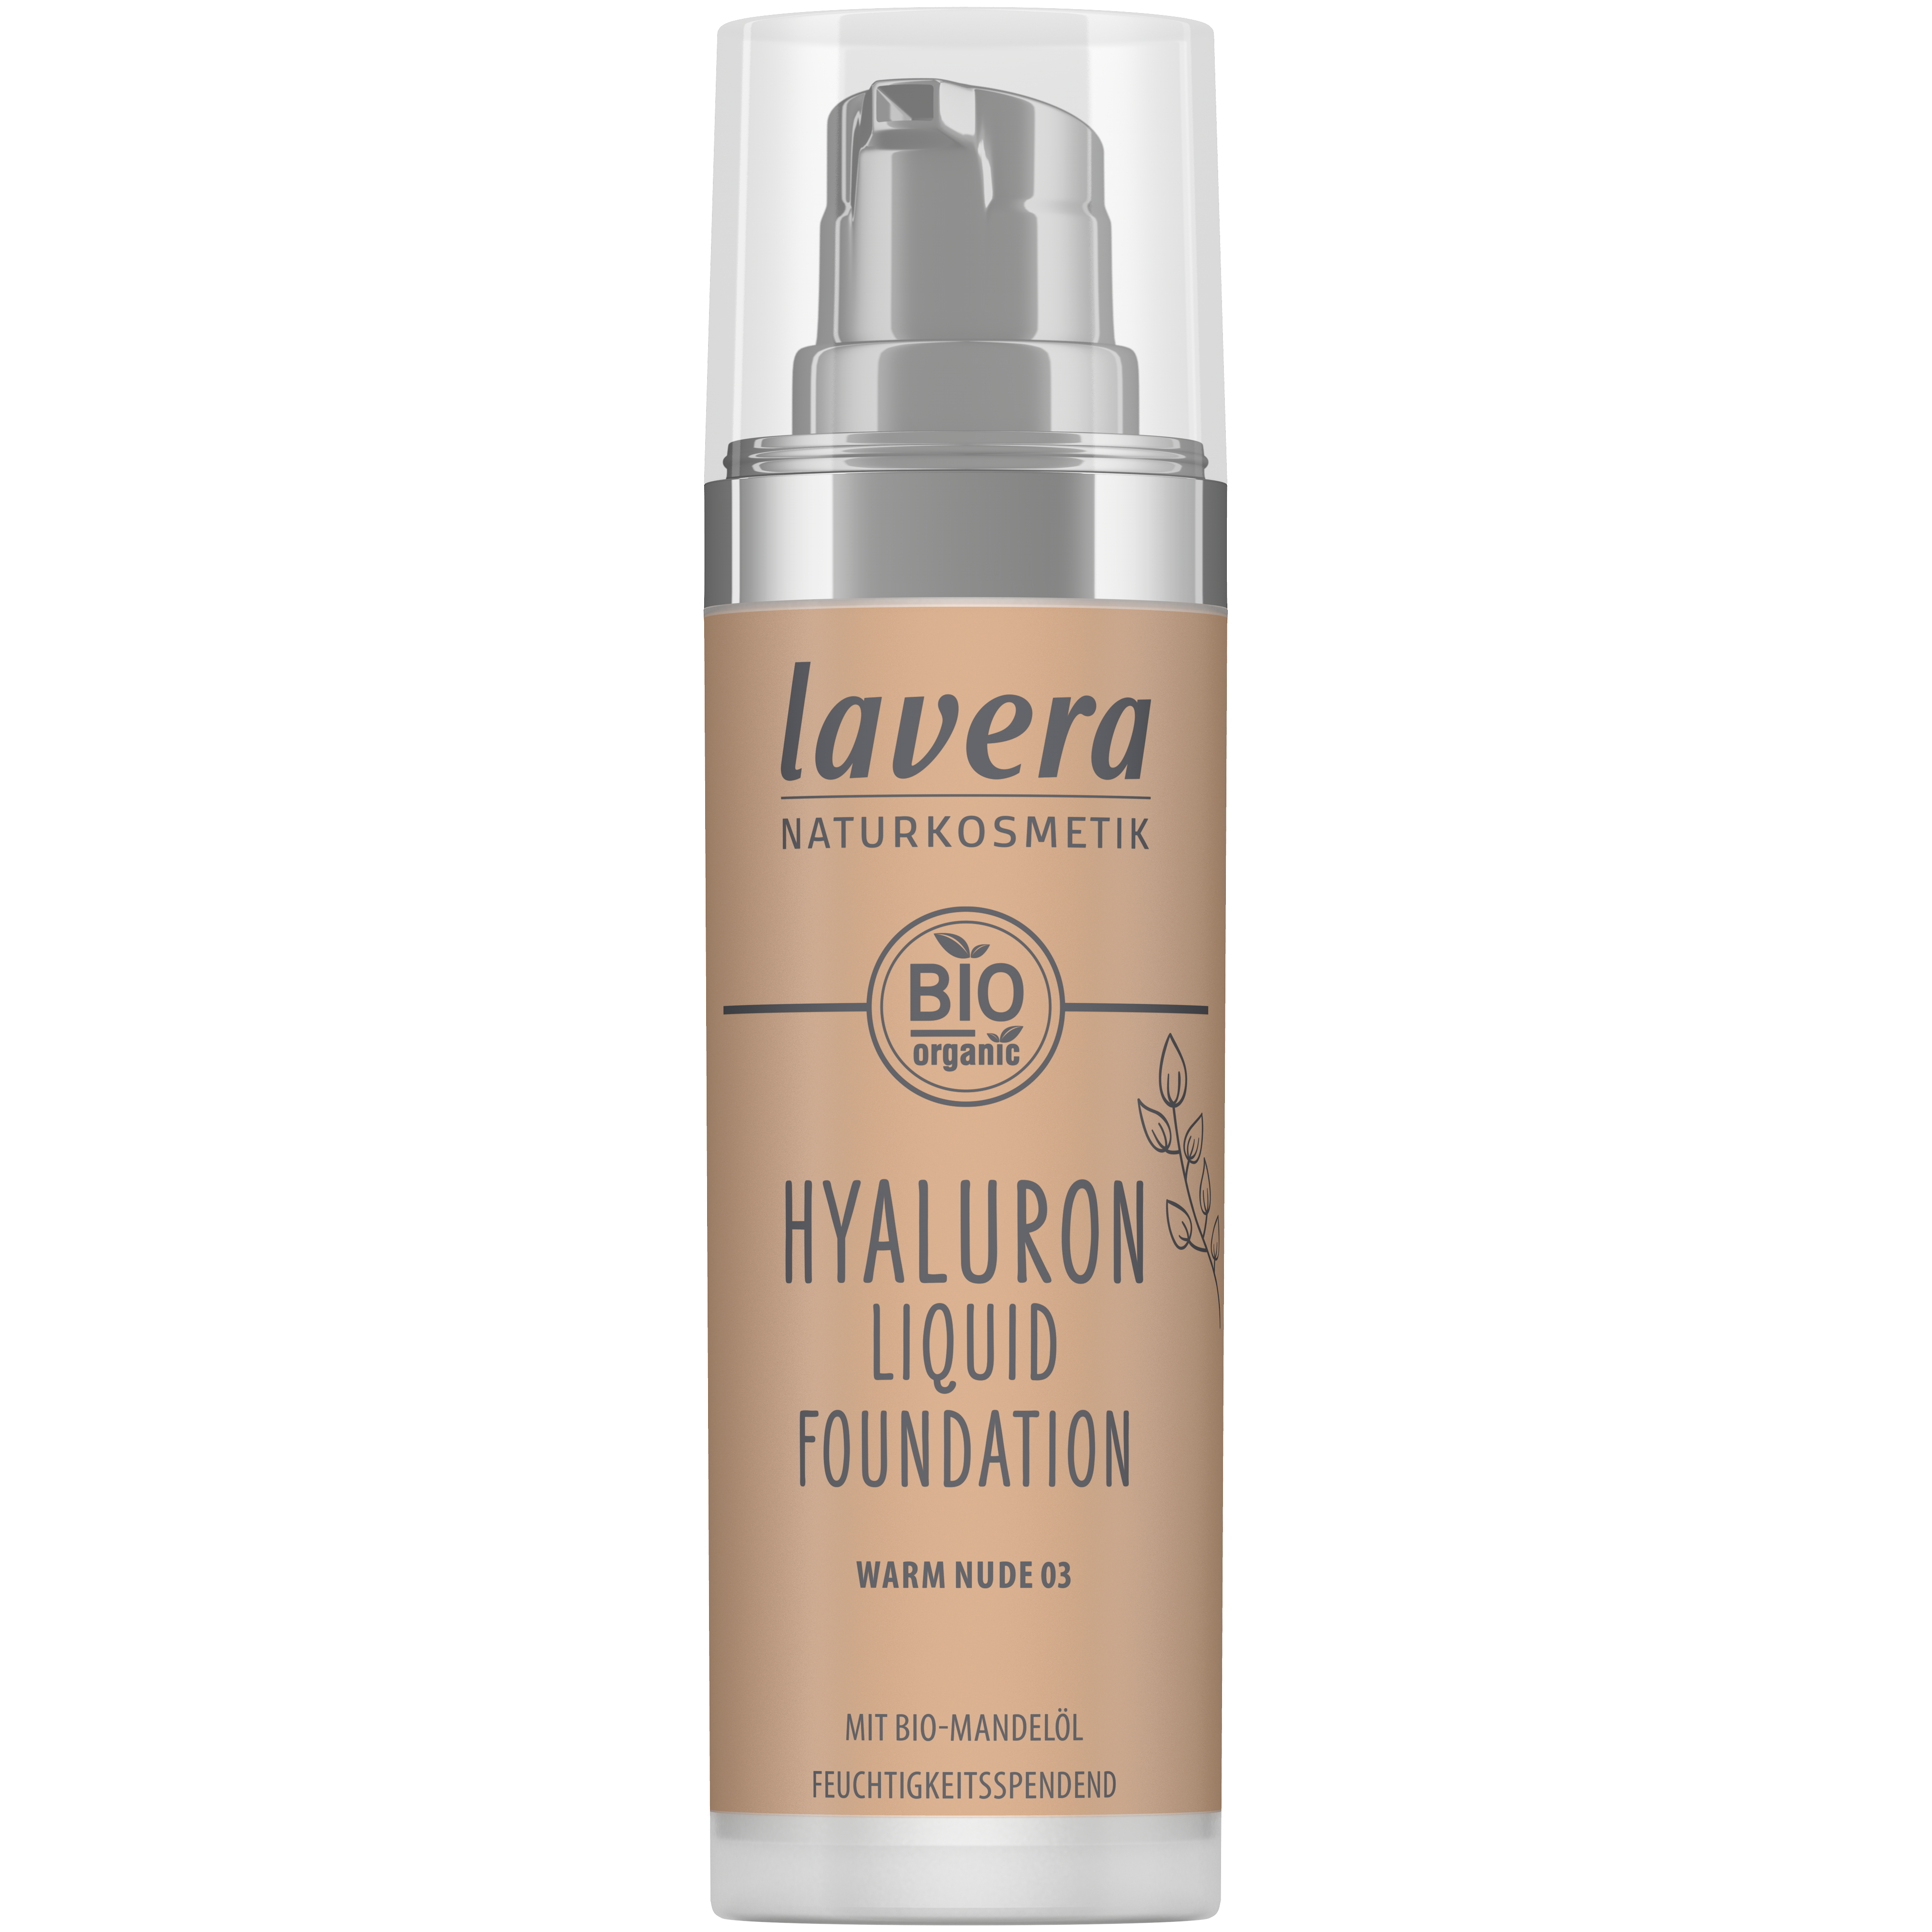 Lavera Hyaluron Liquid Foundation - Warm Nude 03